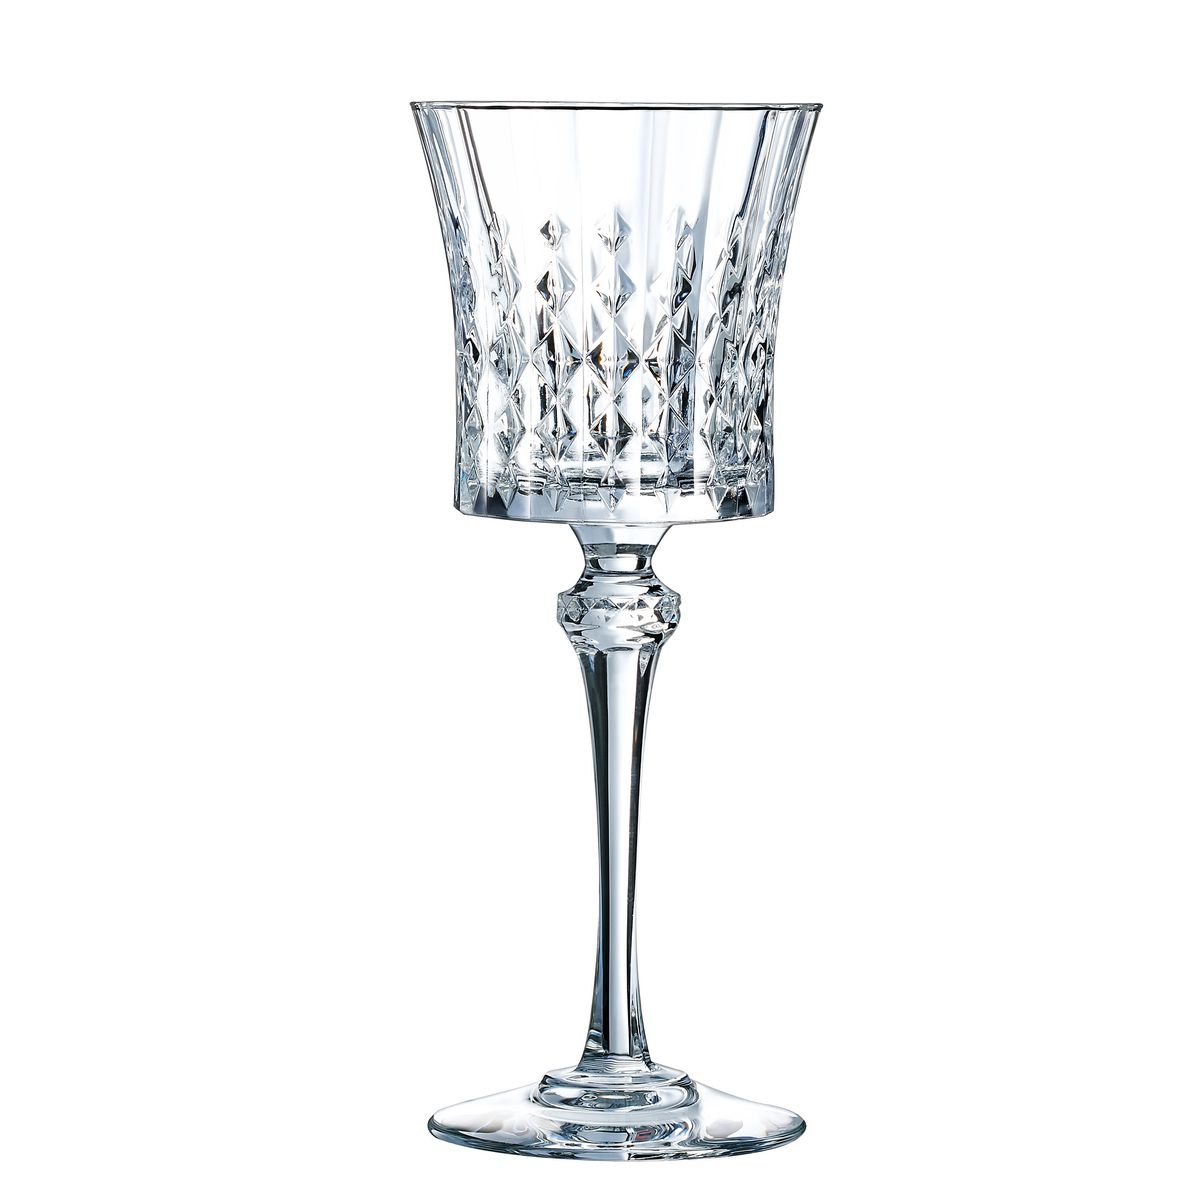 6 verres à pied 19cl - verre ultra transparent au design vintage